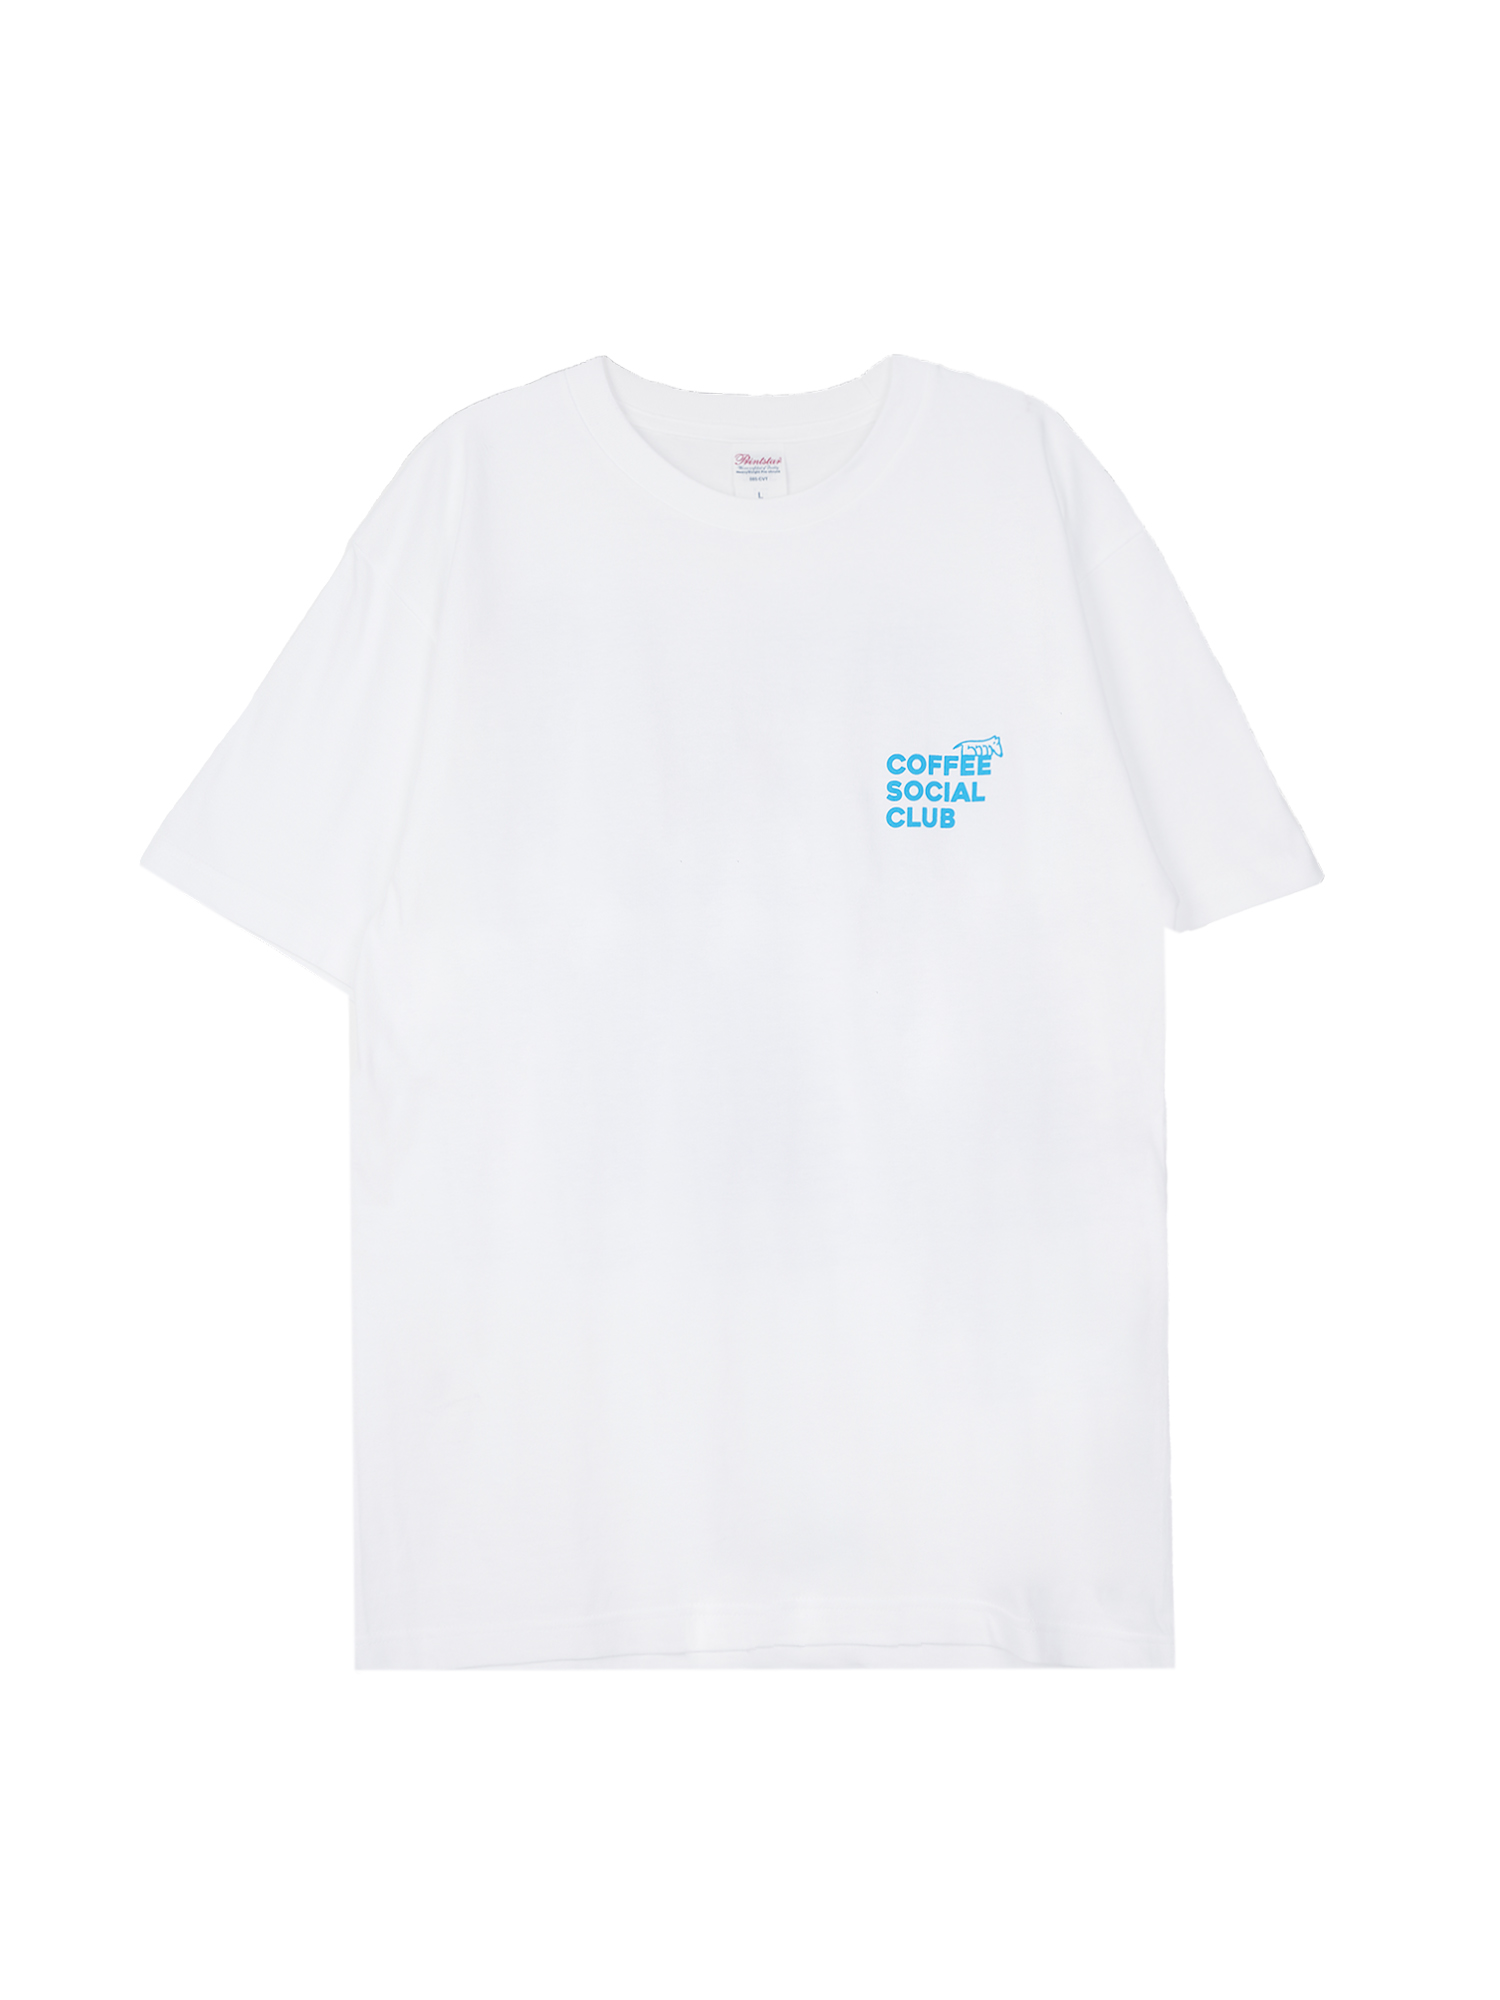 FELT x 33HOODIE Coffee Social Club T-Shirt - White